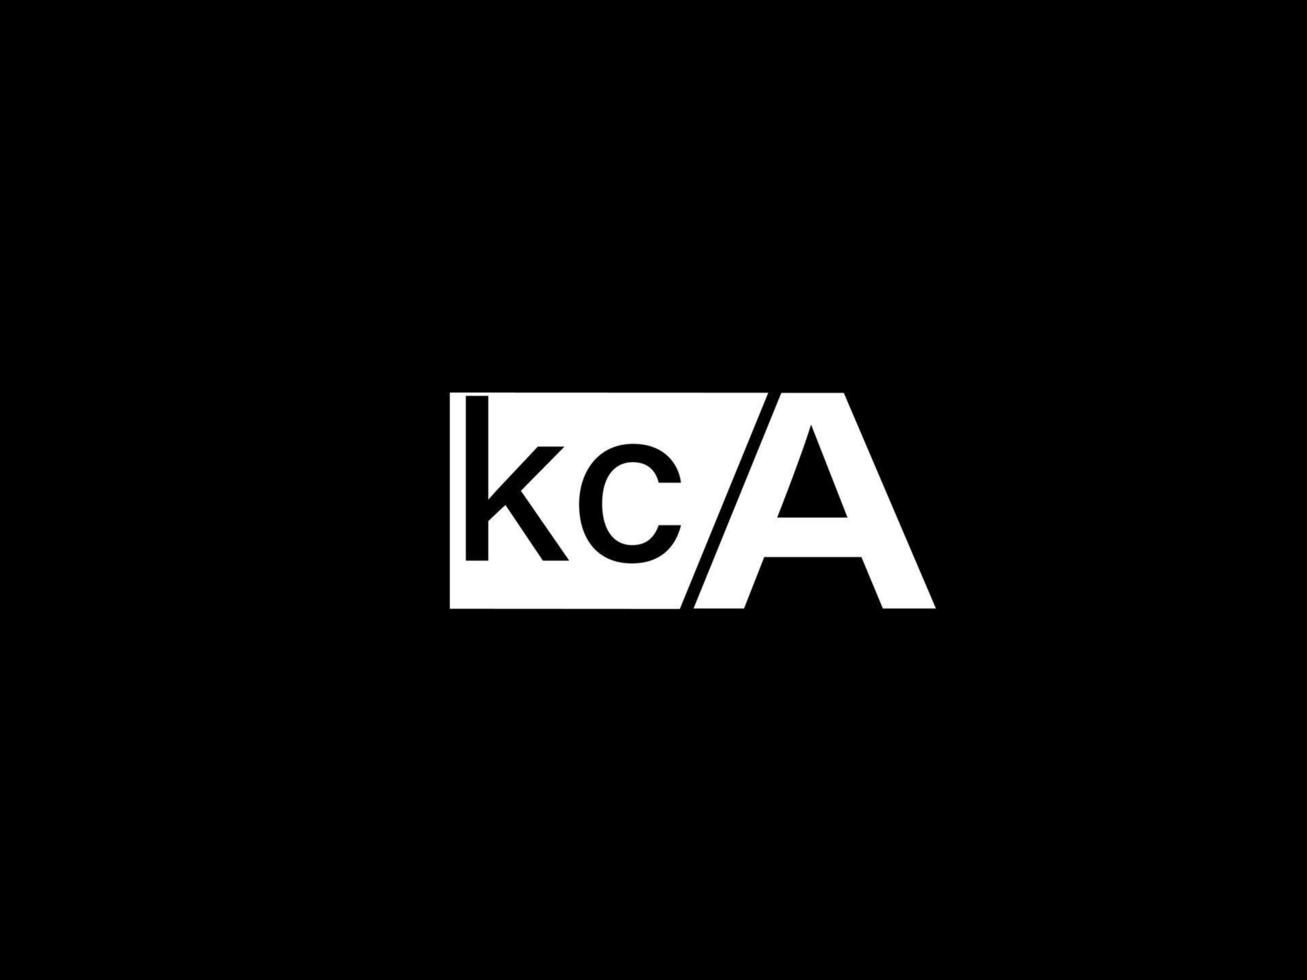 kca logotipo y diseño gráfico arte vectorial, iconos aislados en fondo negro vector